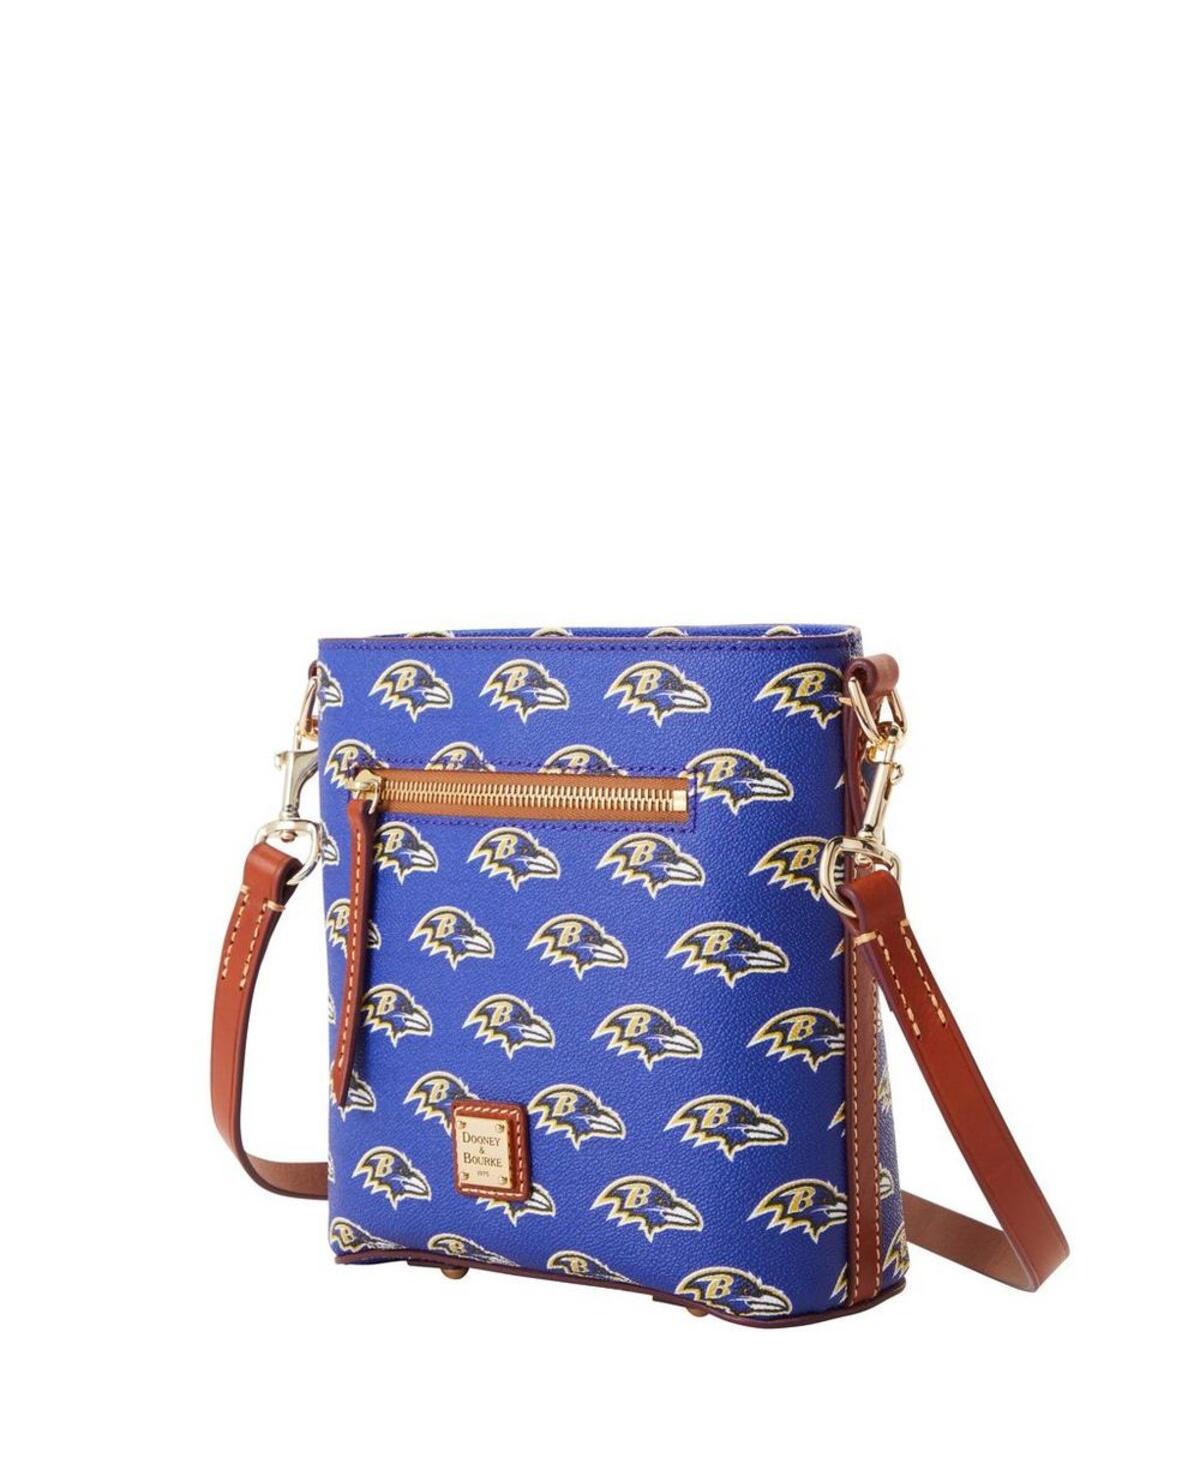 Dooney & Bourke Women's  Kentucky Wildcats Signature Small Zip Crossbody Handbag In Blue